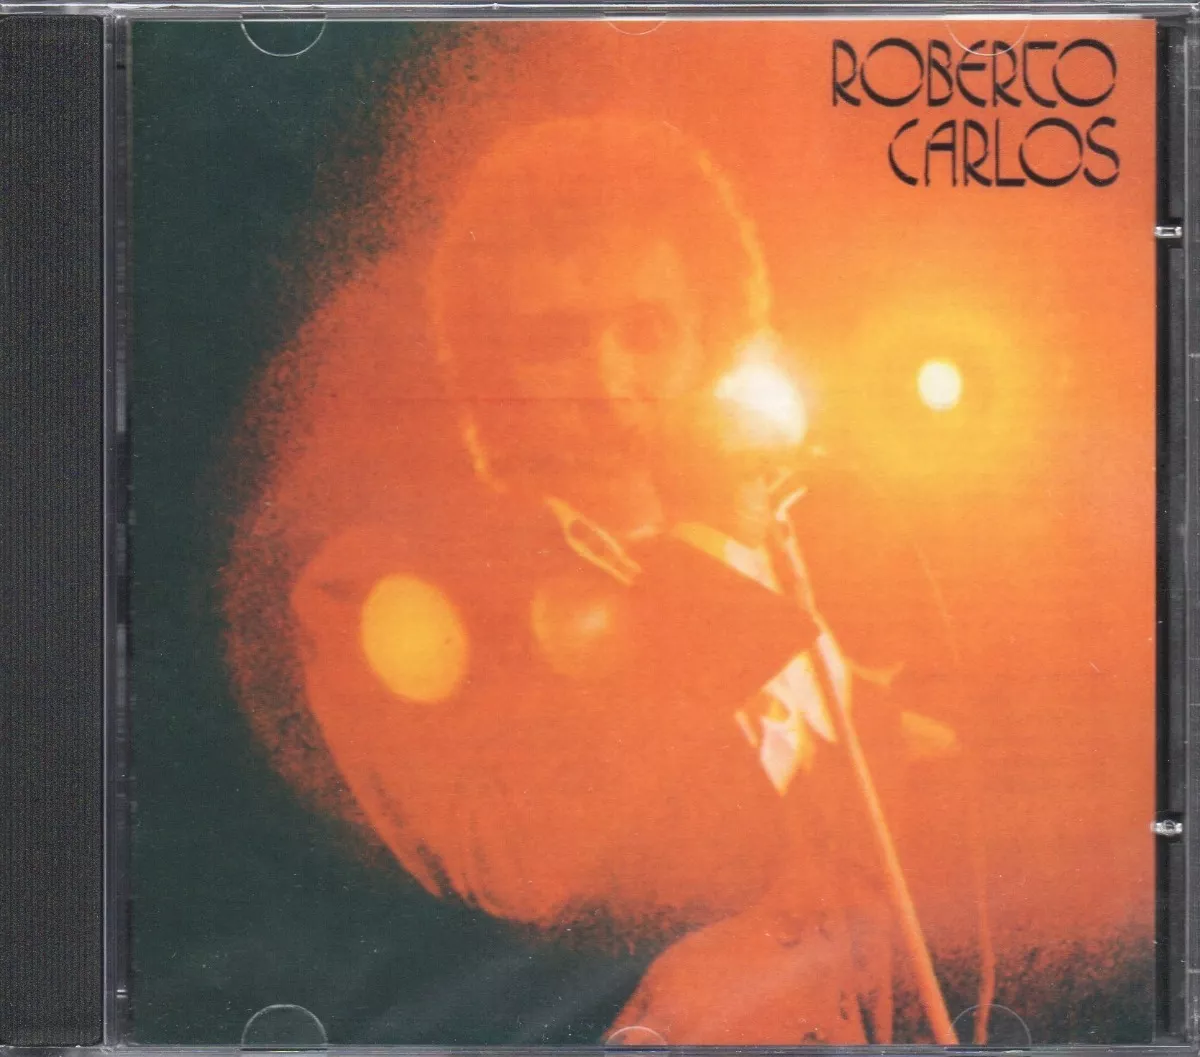 Roberto Carlos Cd 1977 Novo Original Lacrado